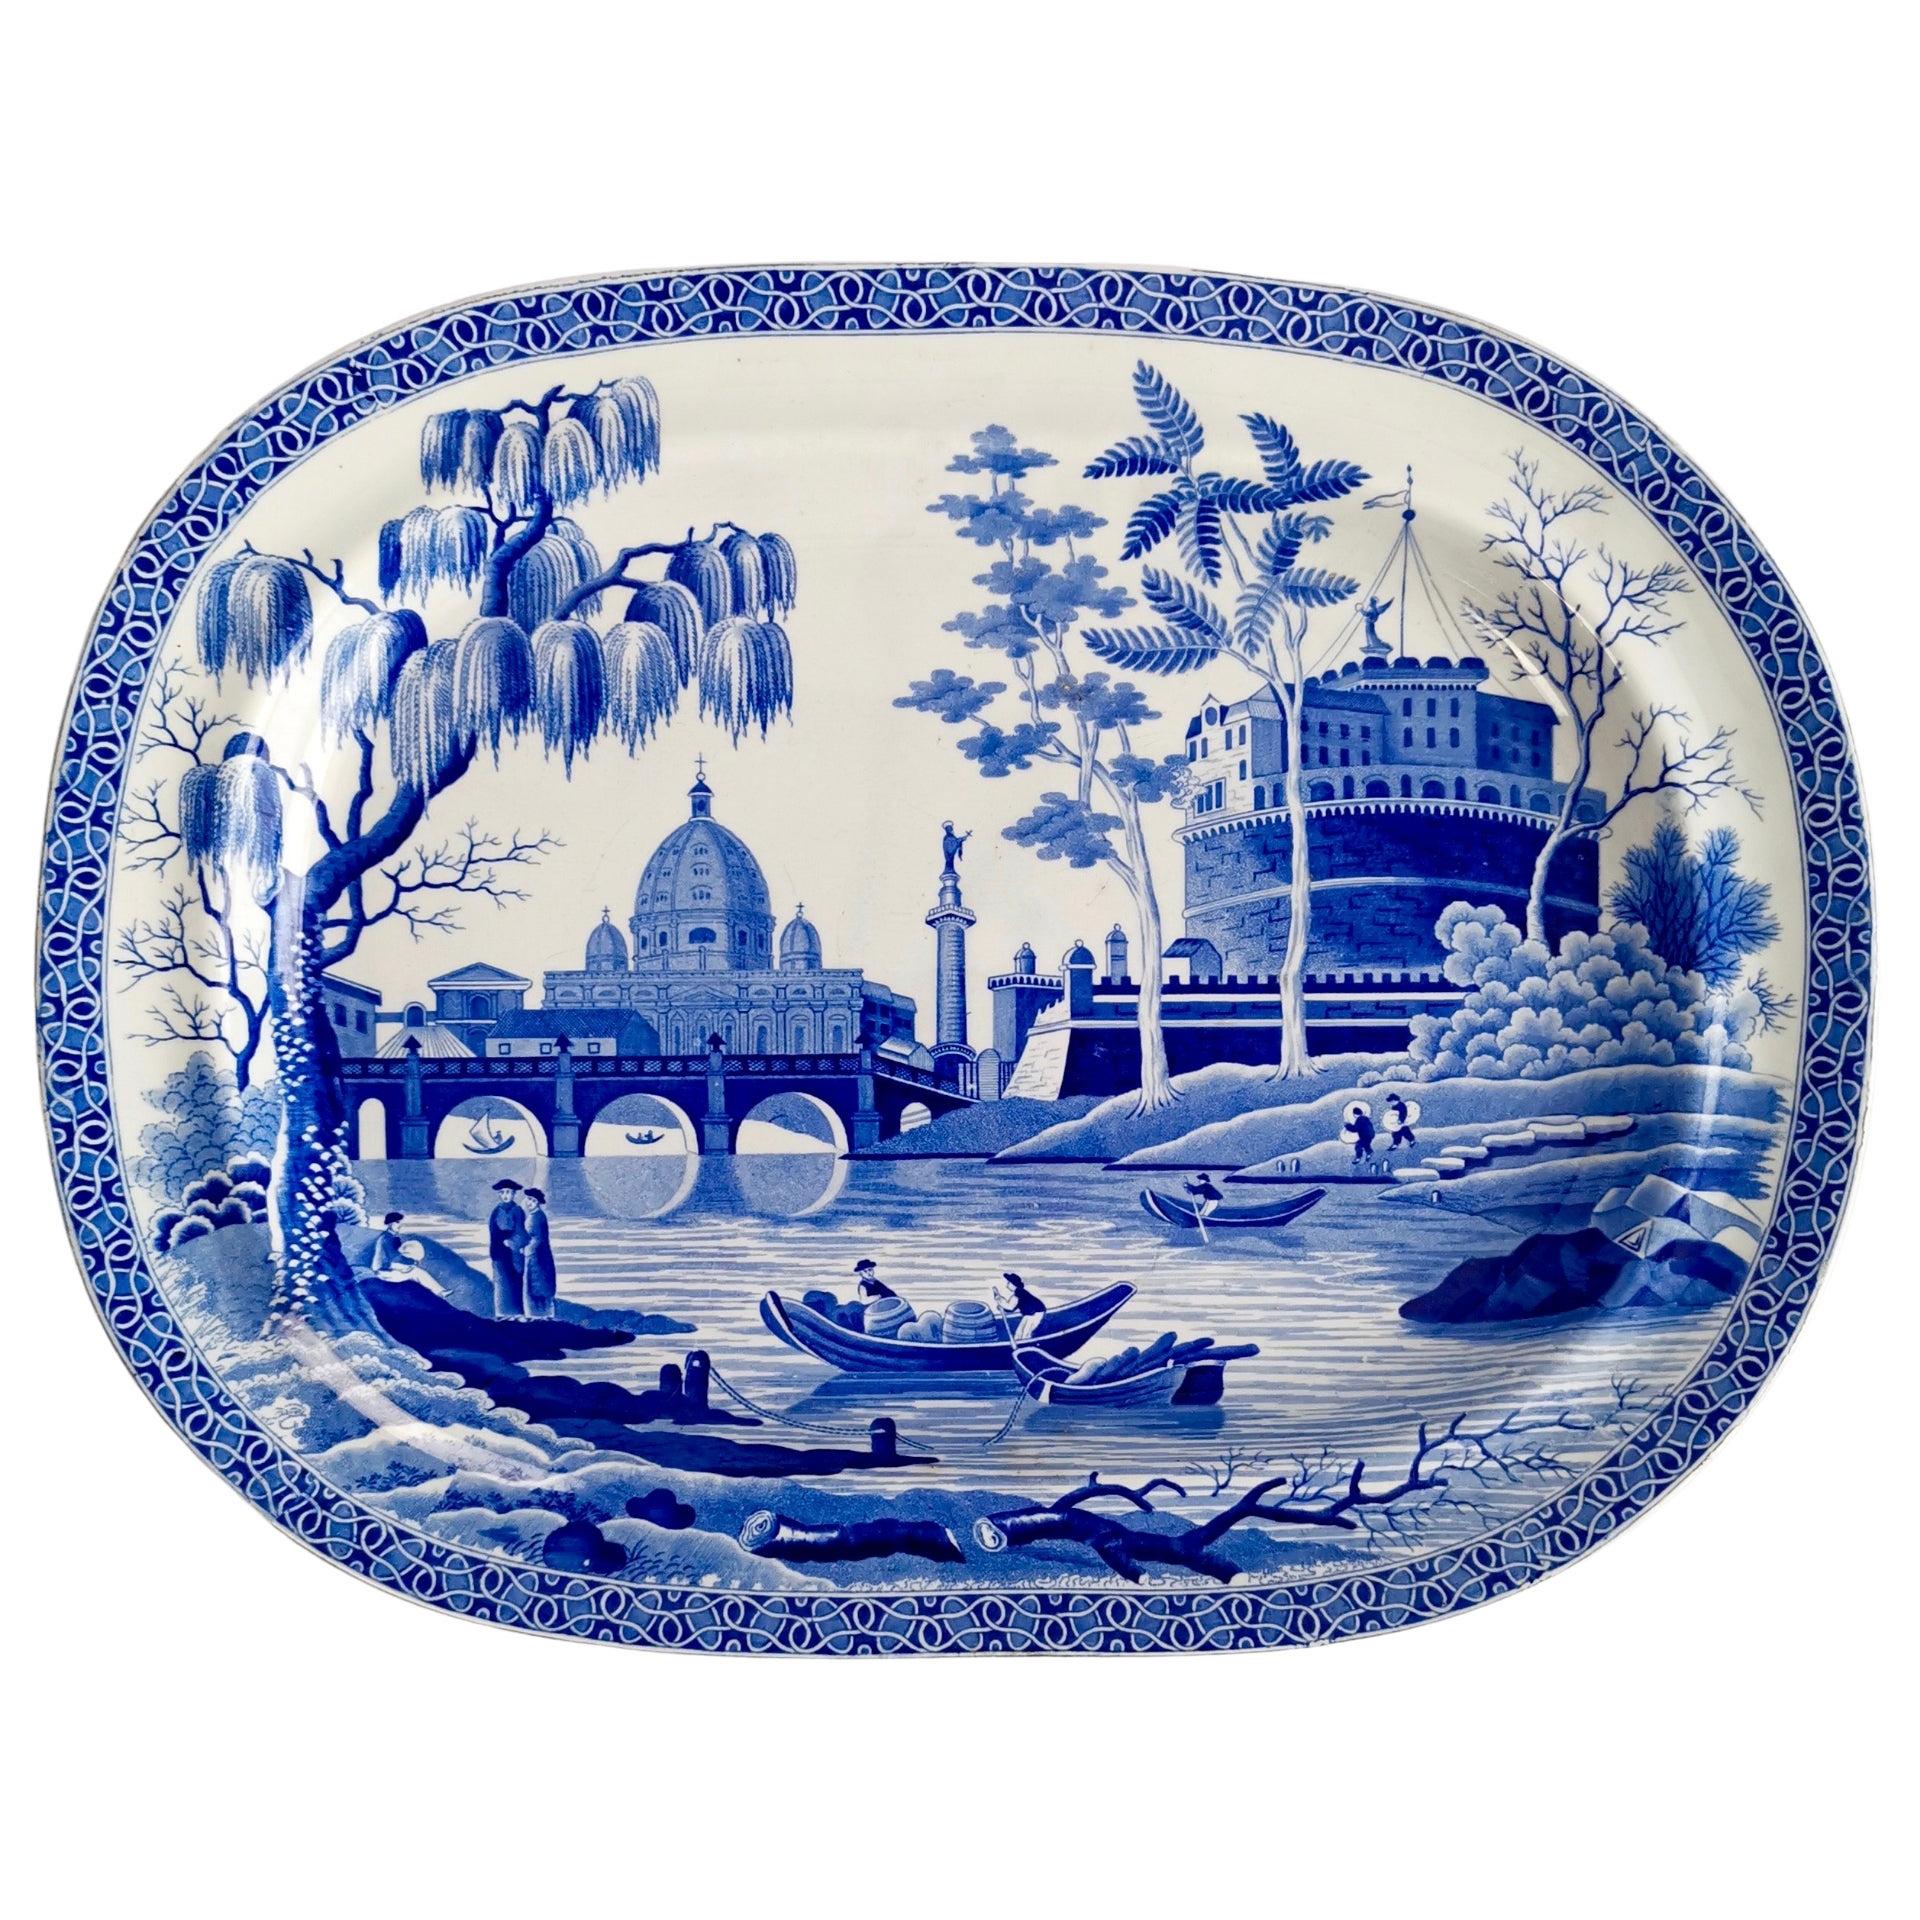 Spode Pearlware Meat Platter, Blue and White Tiber Pattern, Regency, 1811-1833